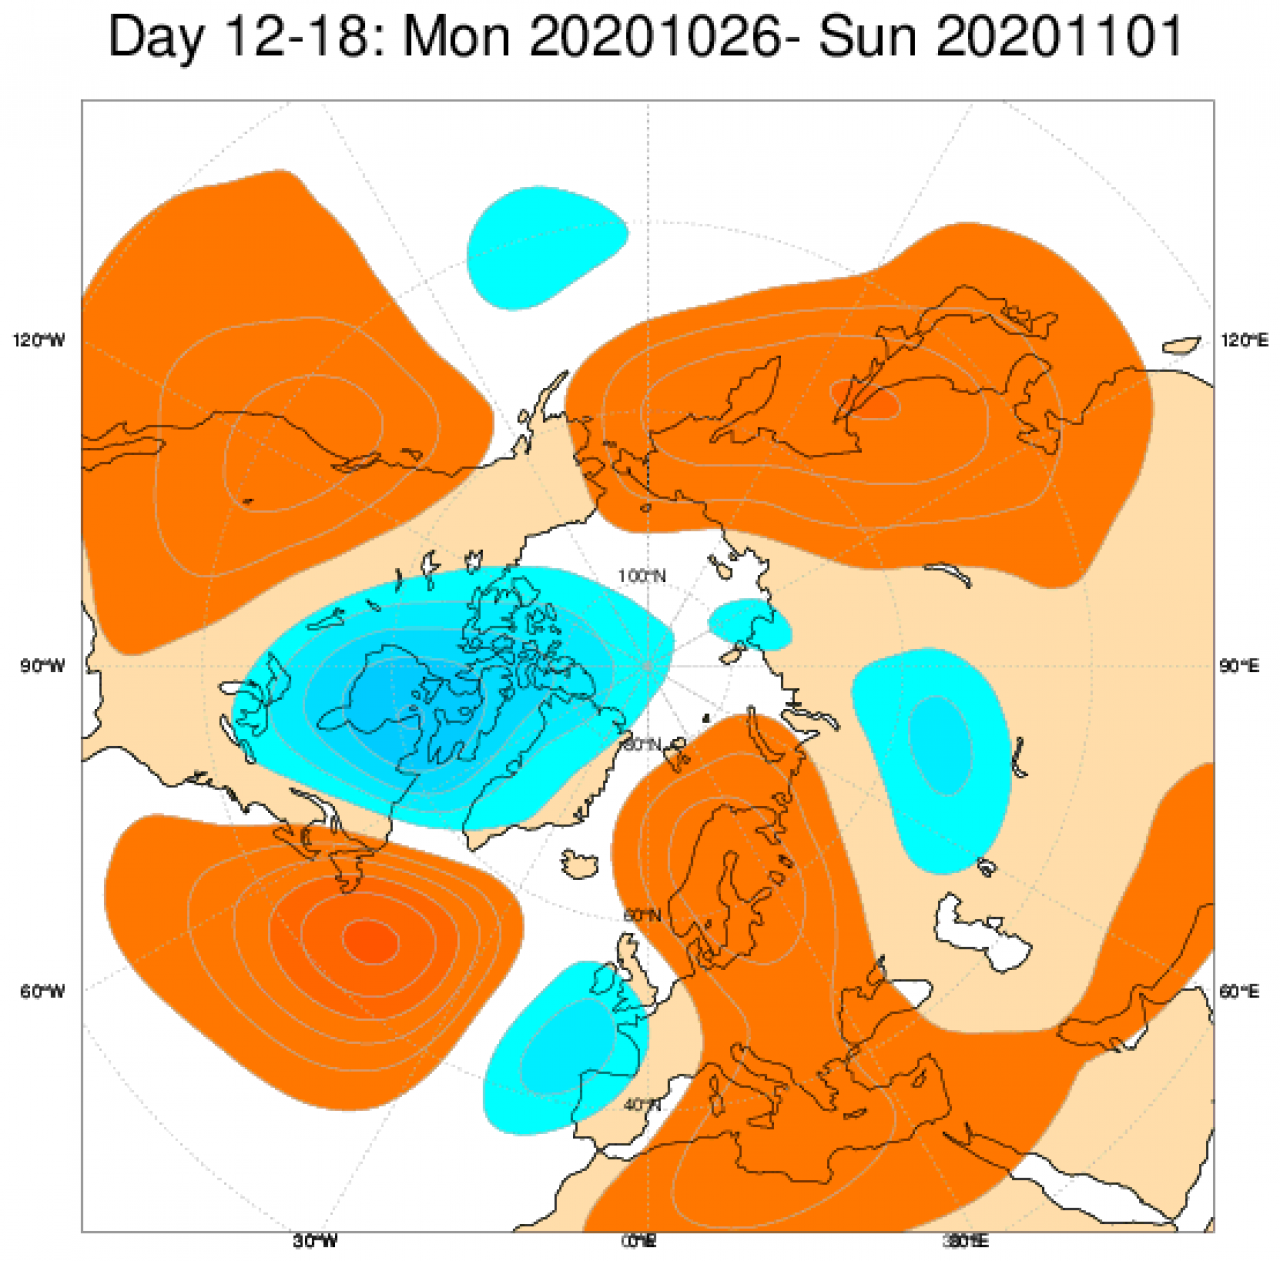  Le anomalie di geopotenziale a 500hPa secondo il modello ECMWF, mediate nel periodo 26 ottobre - 1 novembre